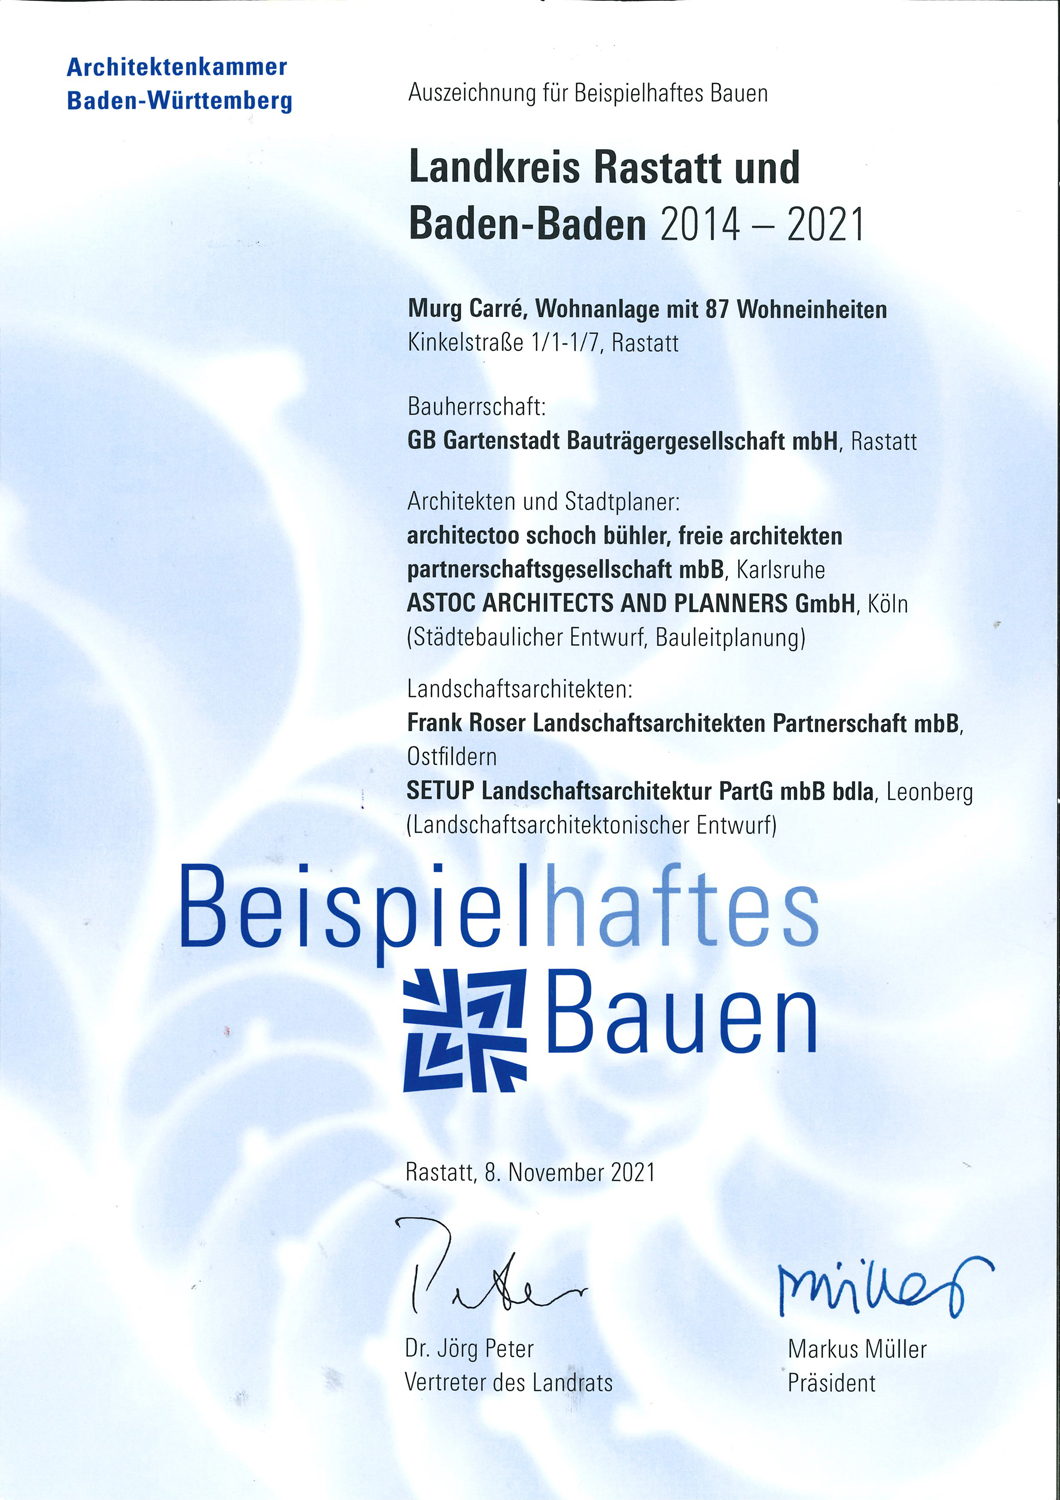 Preisverleihung "Beispielhaftes Bauen Rastatt und Baden-Baden"